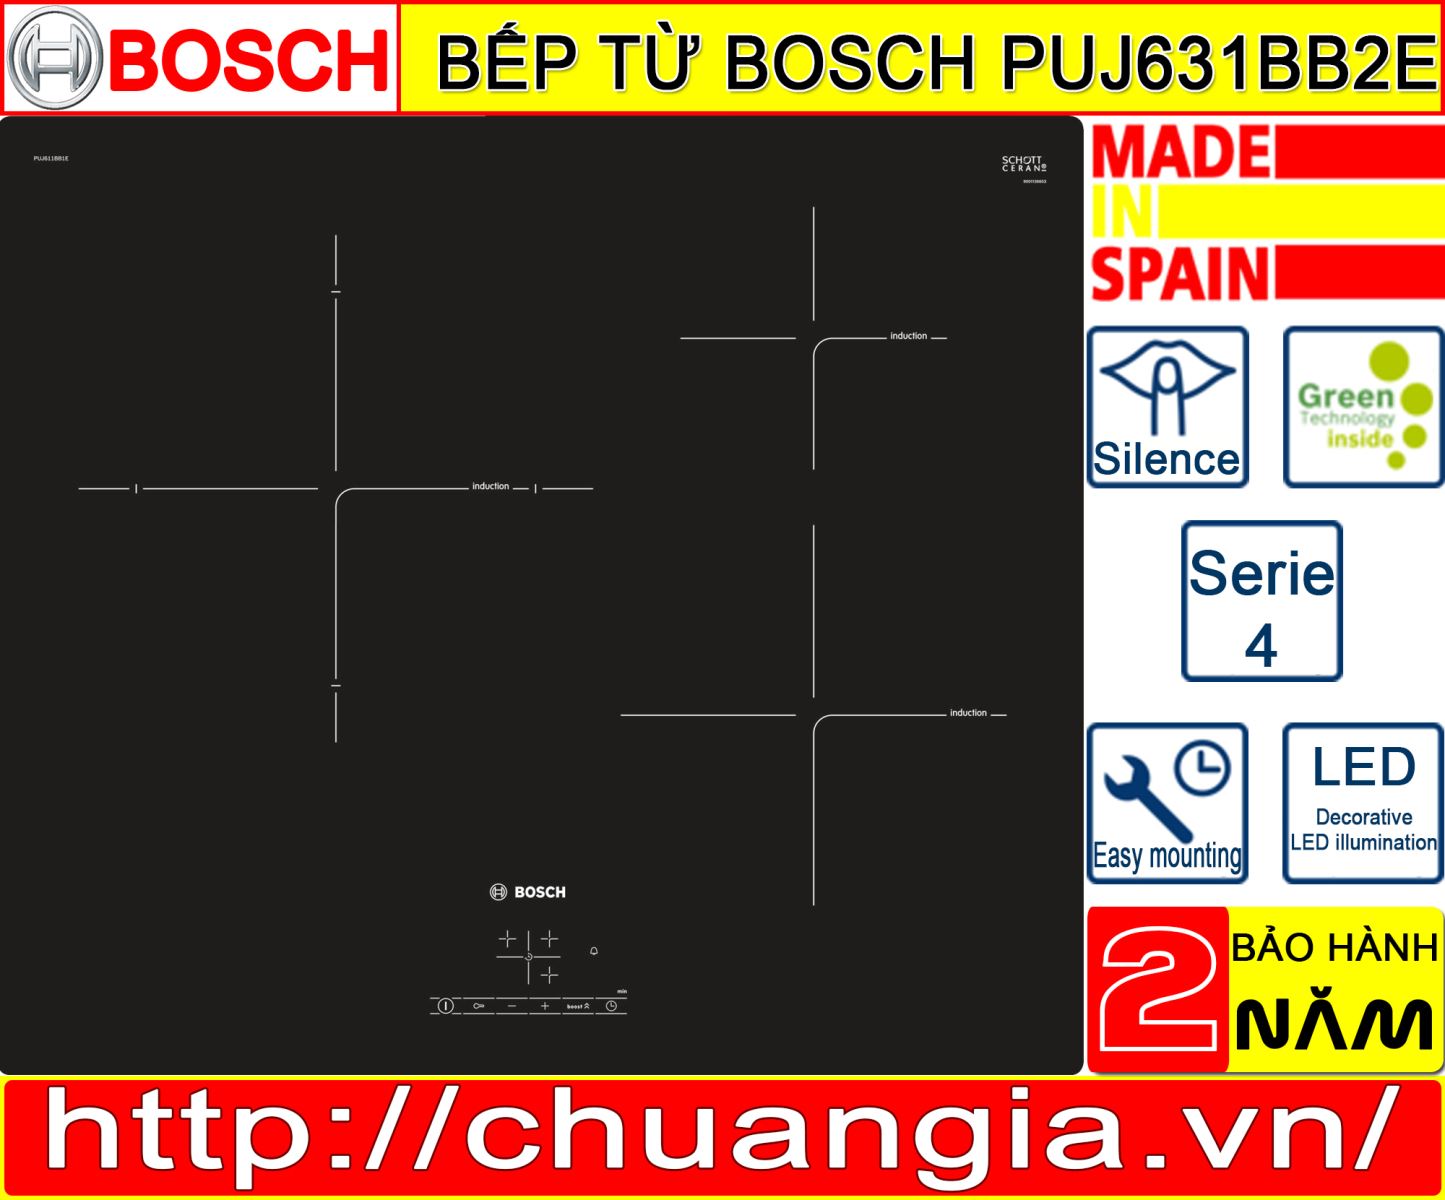 Bếp Từ Bosch PUJ631BB2E, chuangia, đánh giá bếp từ bosch puj631bb2e, bếp từ bosch puc631bb2e, bếp từ bosch pij651fc1e, bếp bosch puc631bb2e, đánh giá bếp từ bosch puc631bb2e, bếp từ bosch puj611bb1e, bếp từ bosch pid675dc1e, bếp từ bosch pij675fc1e